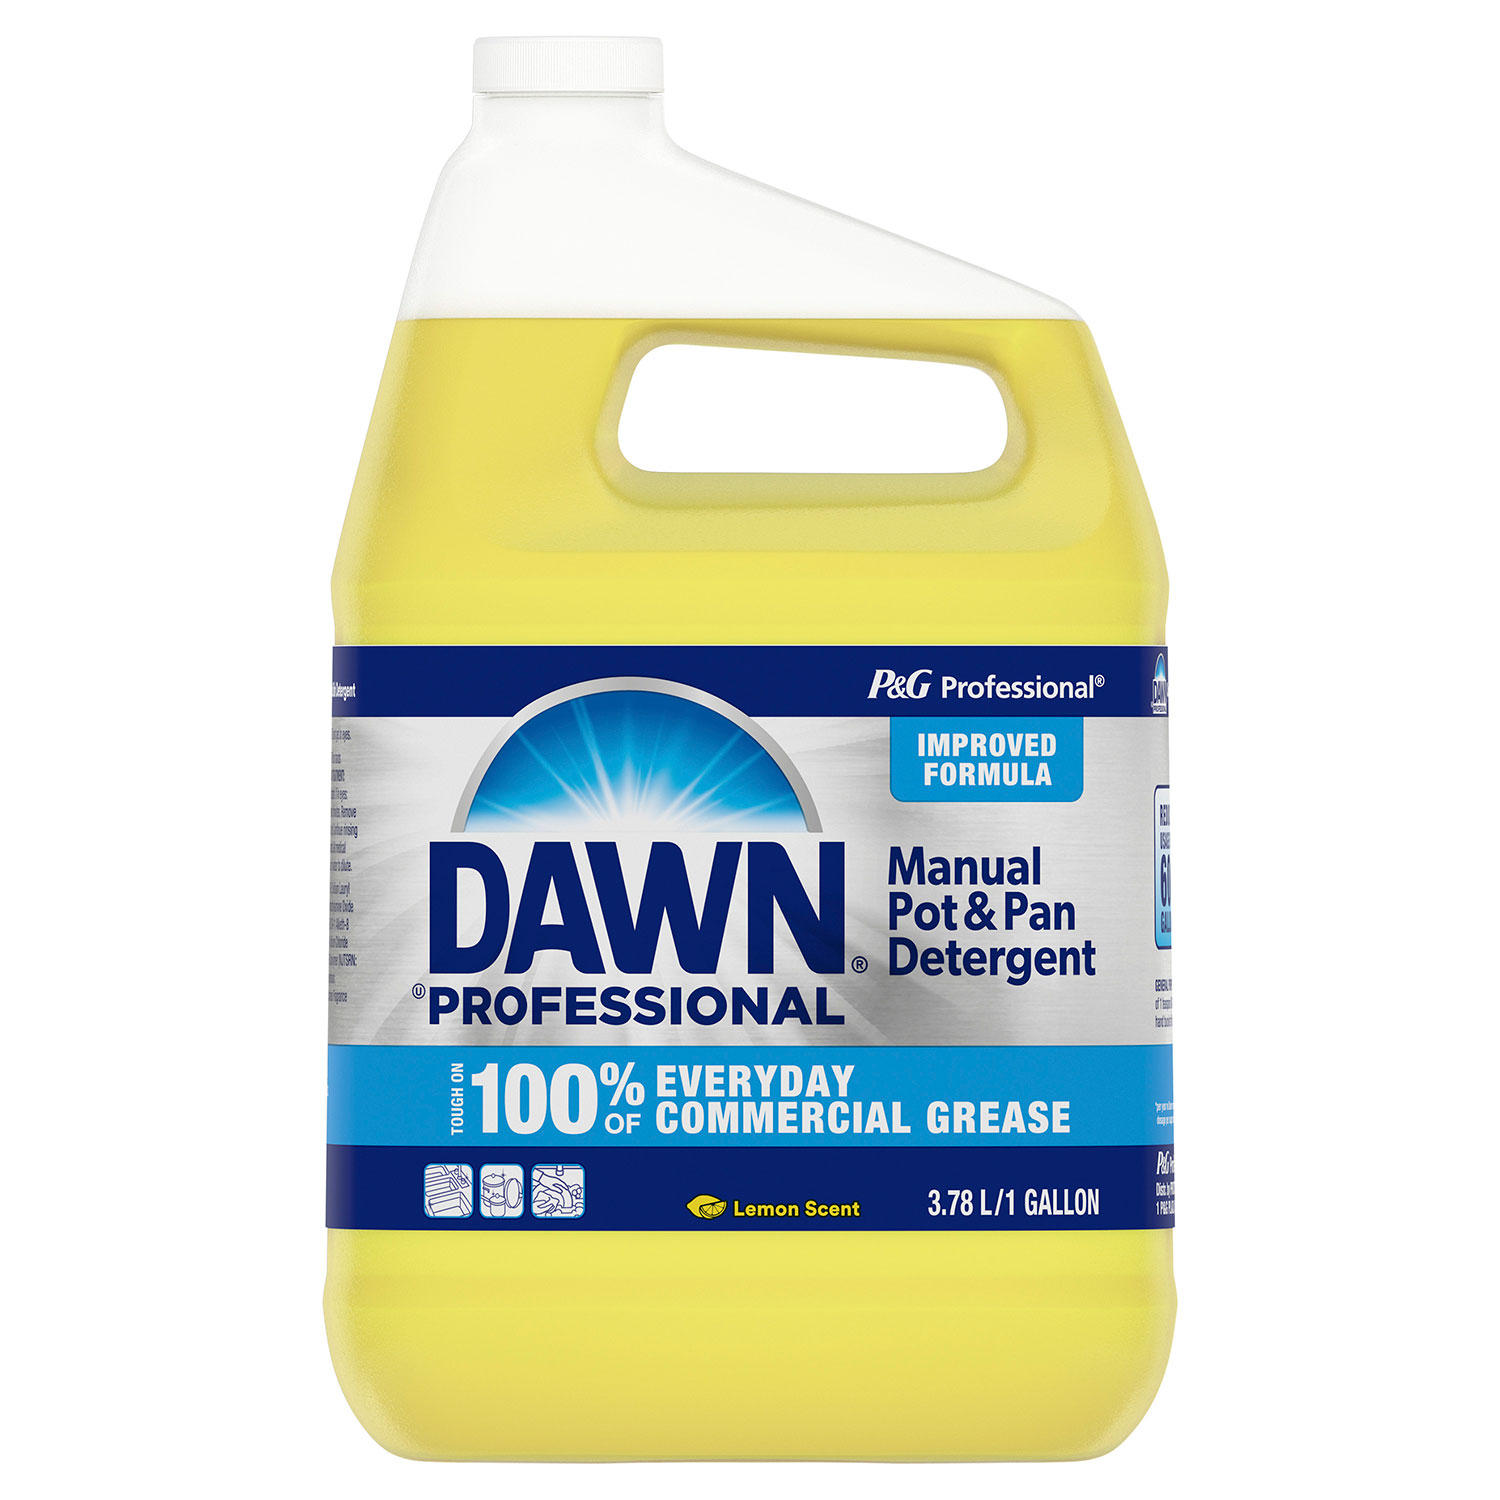 Dawn Professional Manual Pot and Pan Detergent Dish Soap, 1 gal. (Lemon)